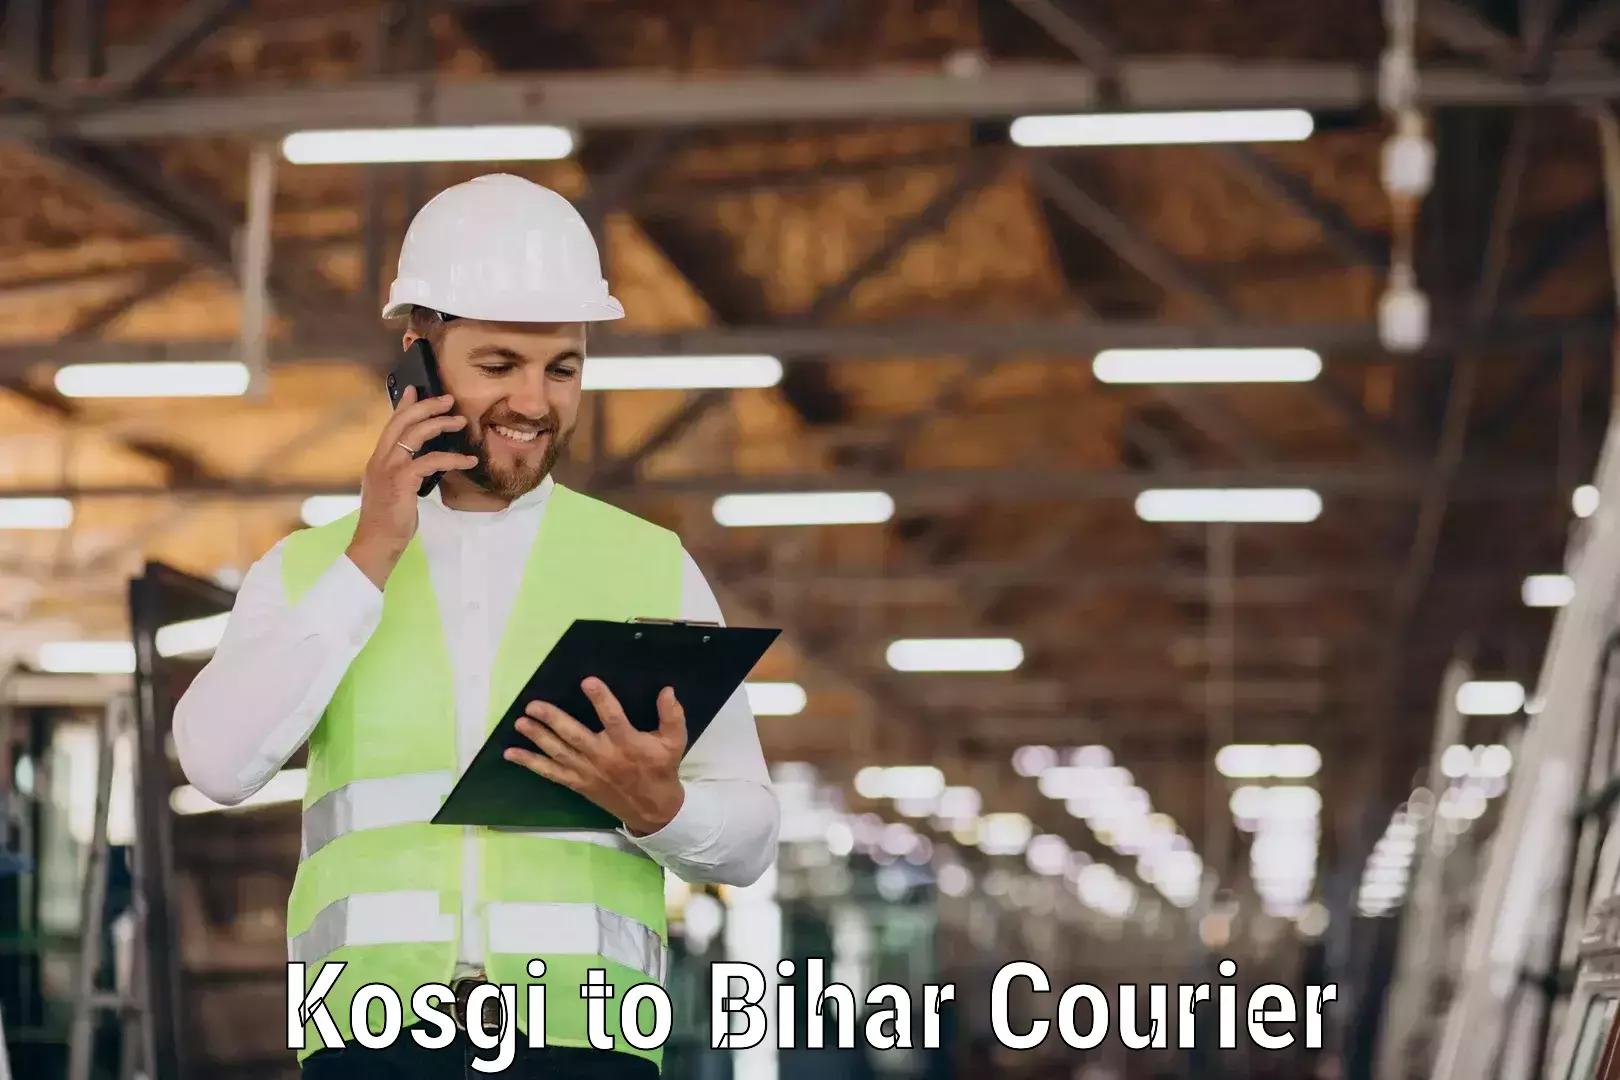 Efficient shipping operations Kosgi to Malmaliya